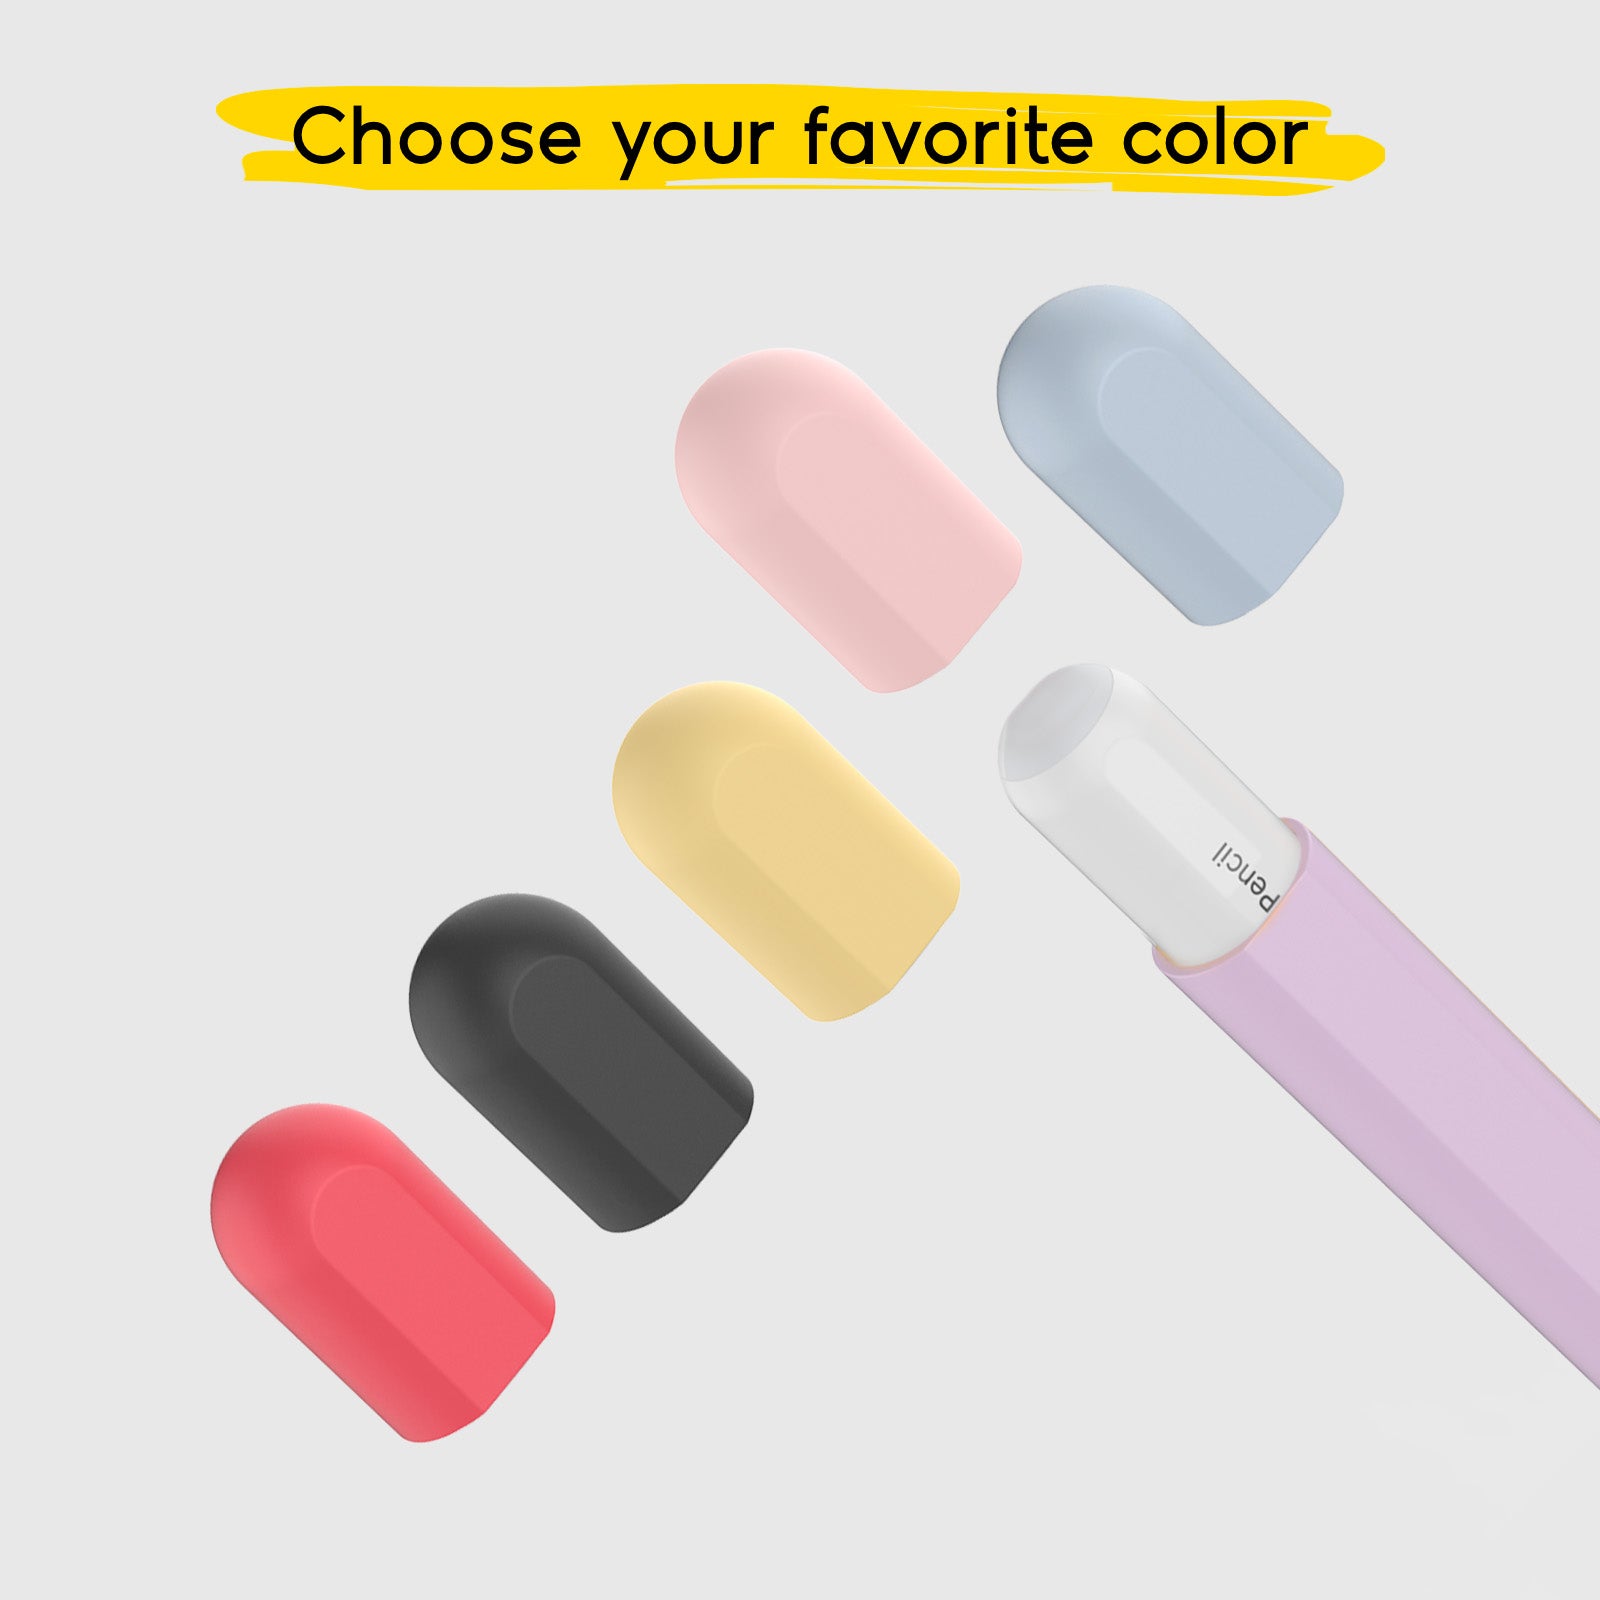 Fliederfarbene Schutzhülle für Apple Pencil der 1. und 2. Generation mit 5 farbigen Kappen